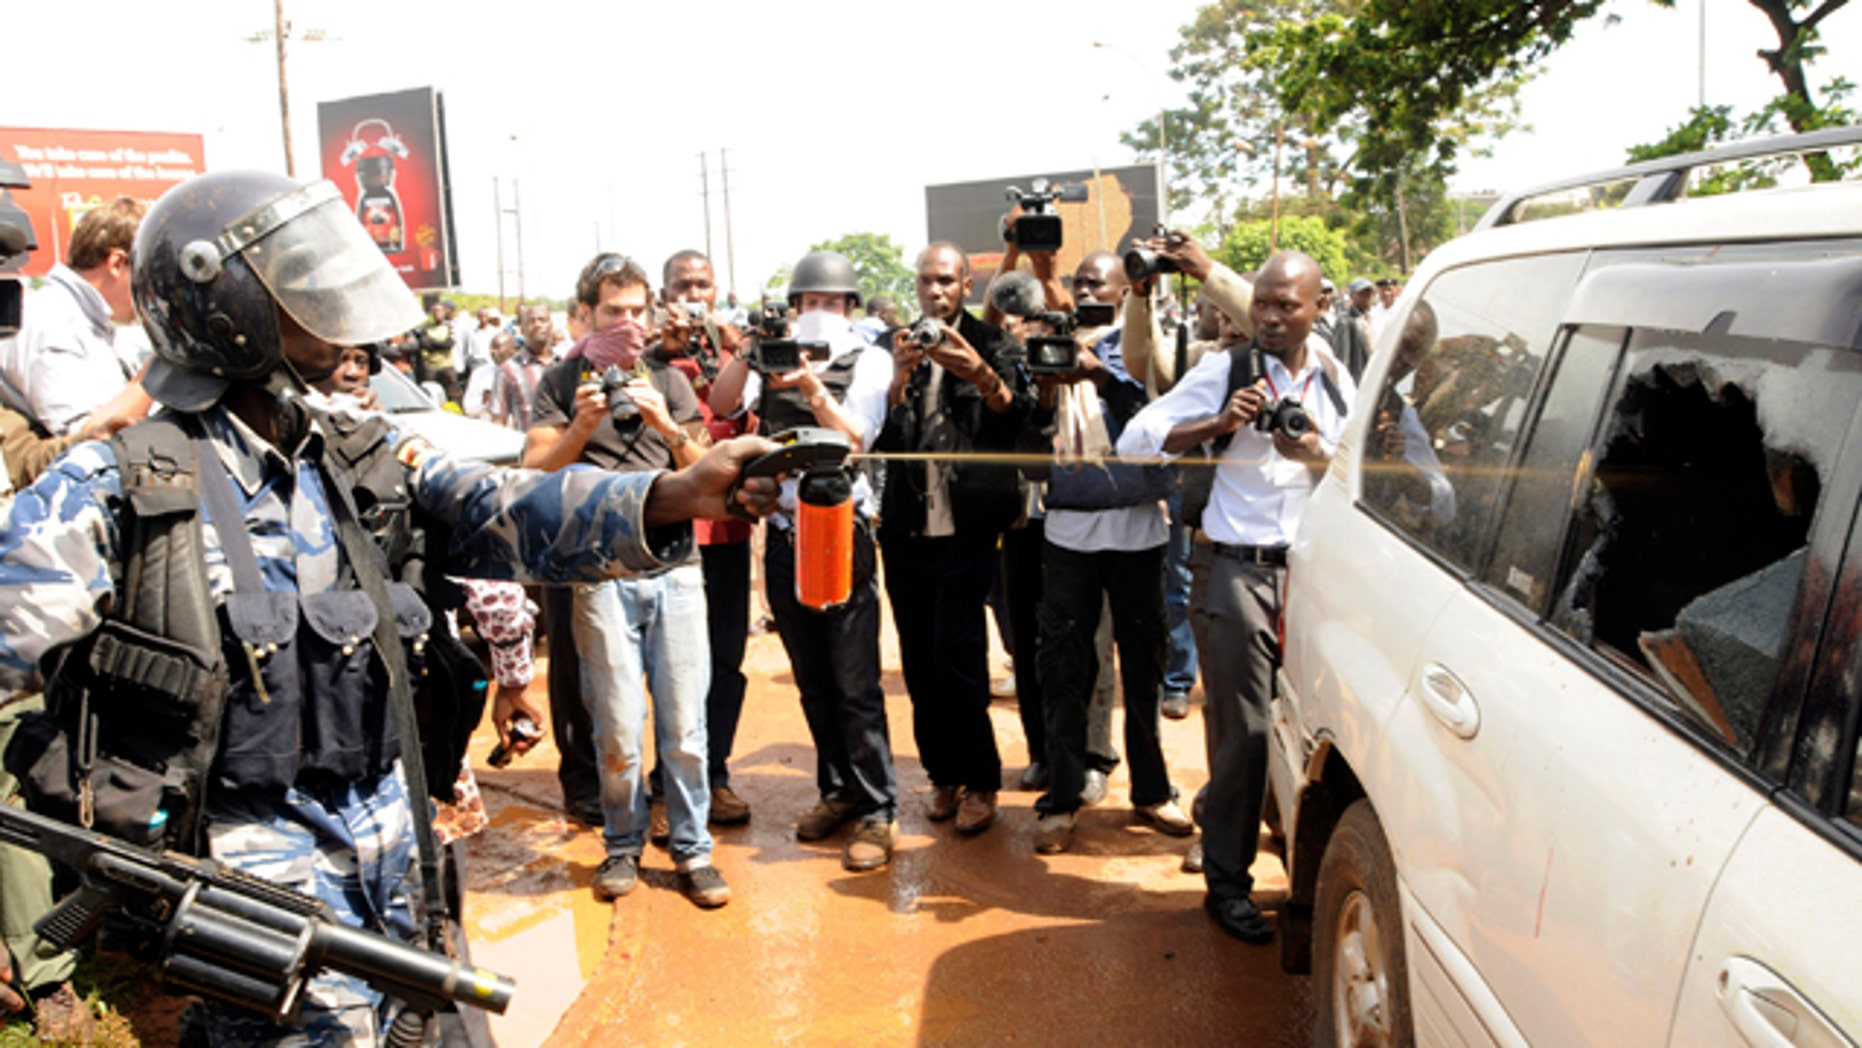 Riots Erupt In Uganda After Brutal Arrest At Least 2 Dead Fox News 0320